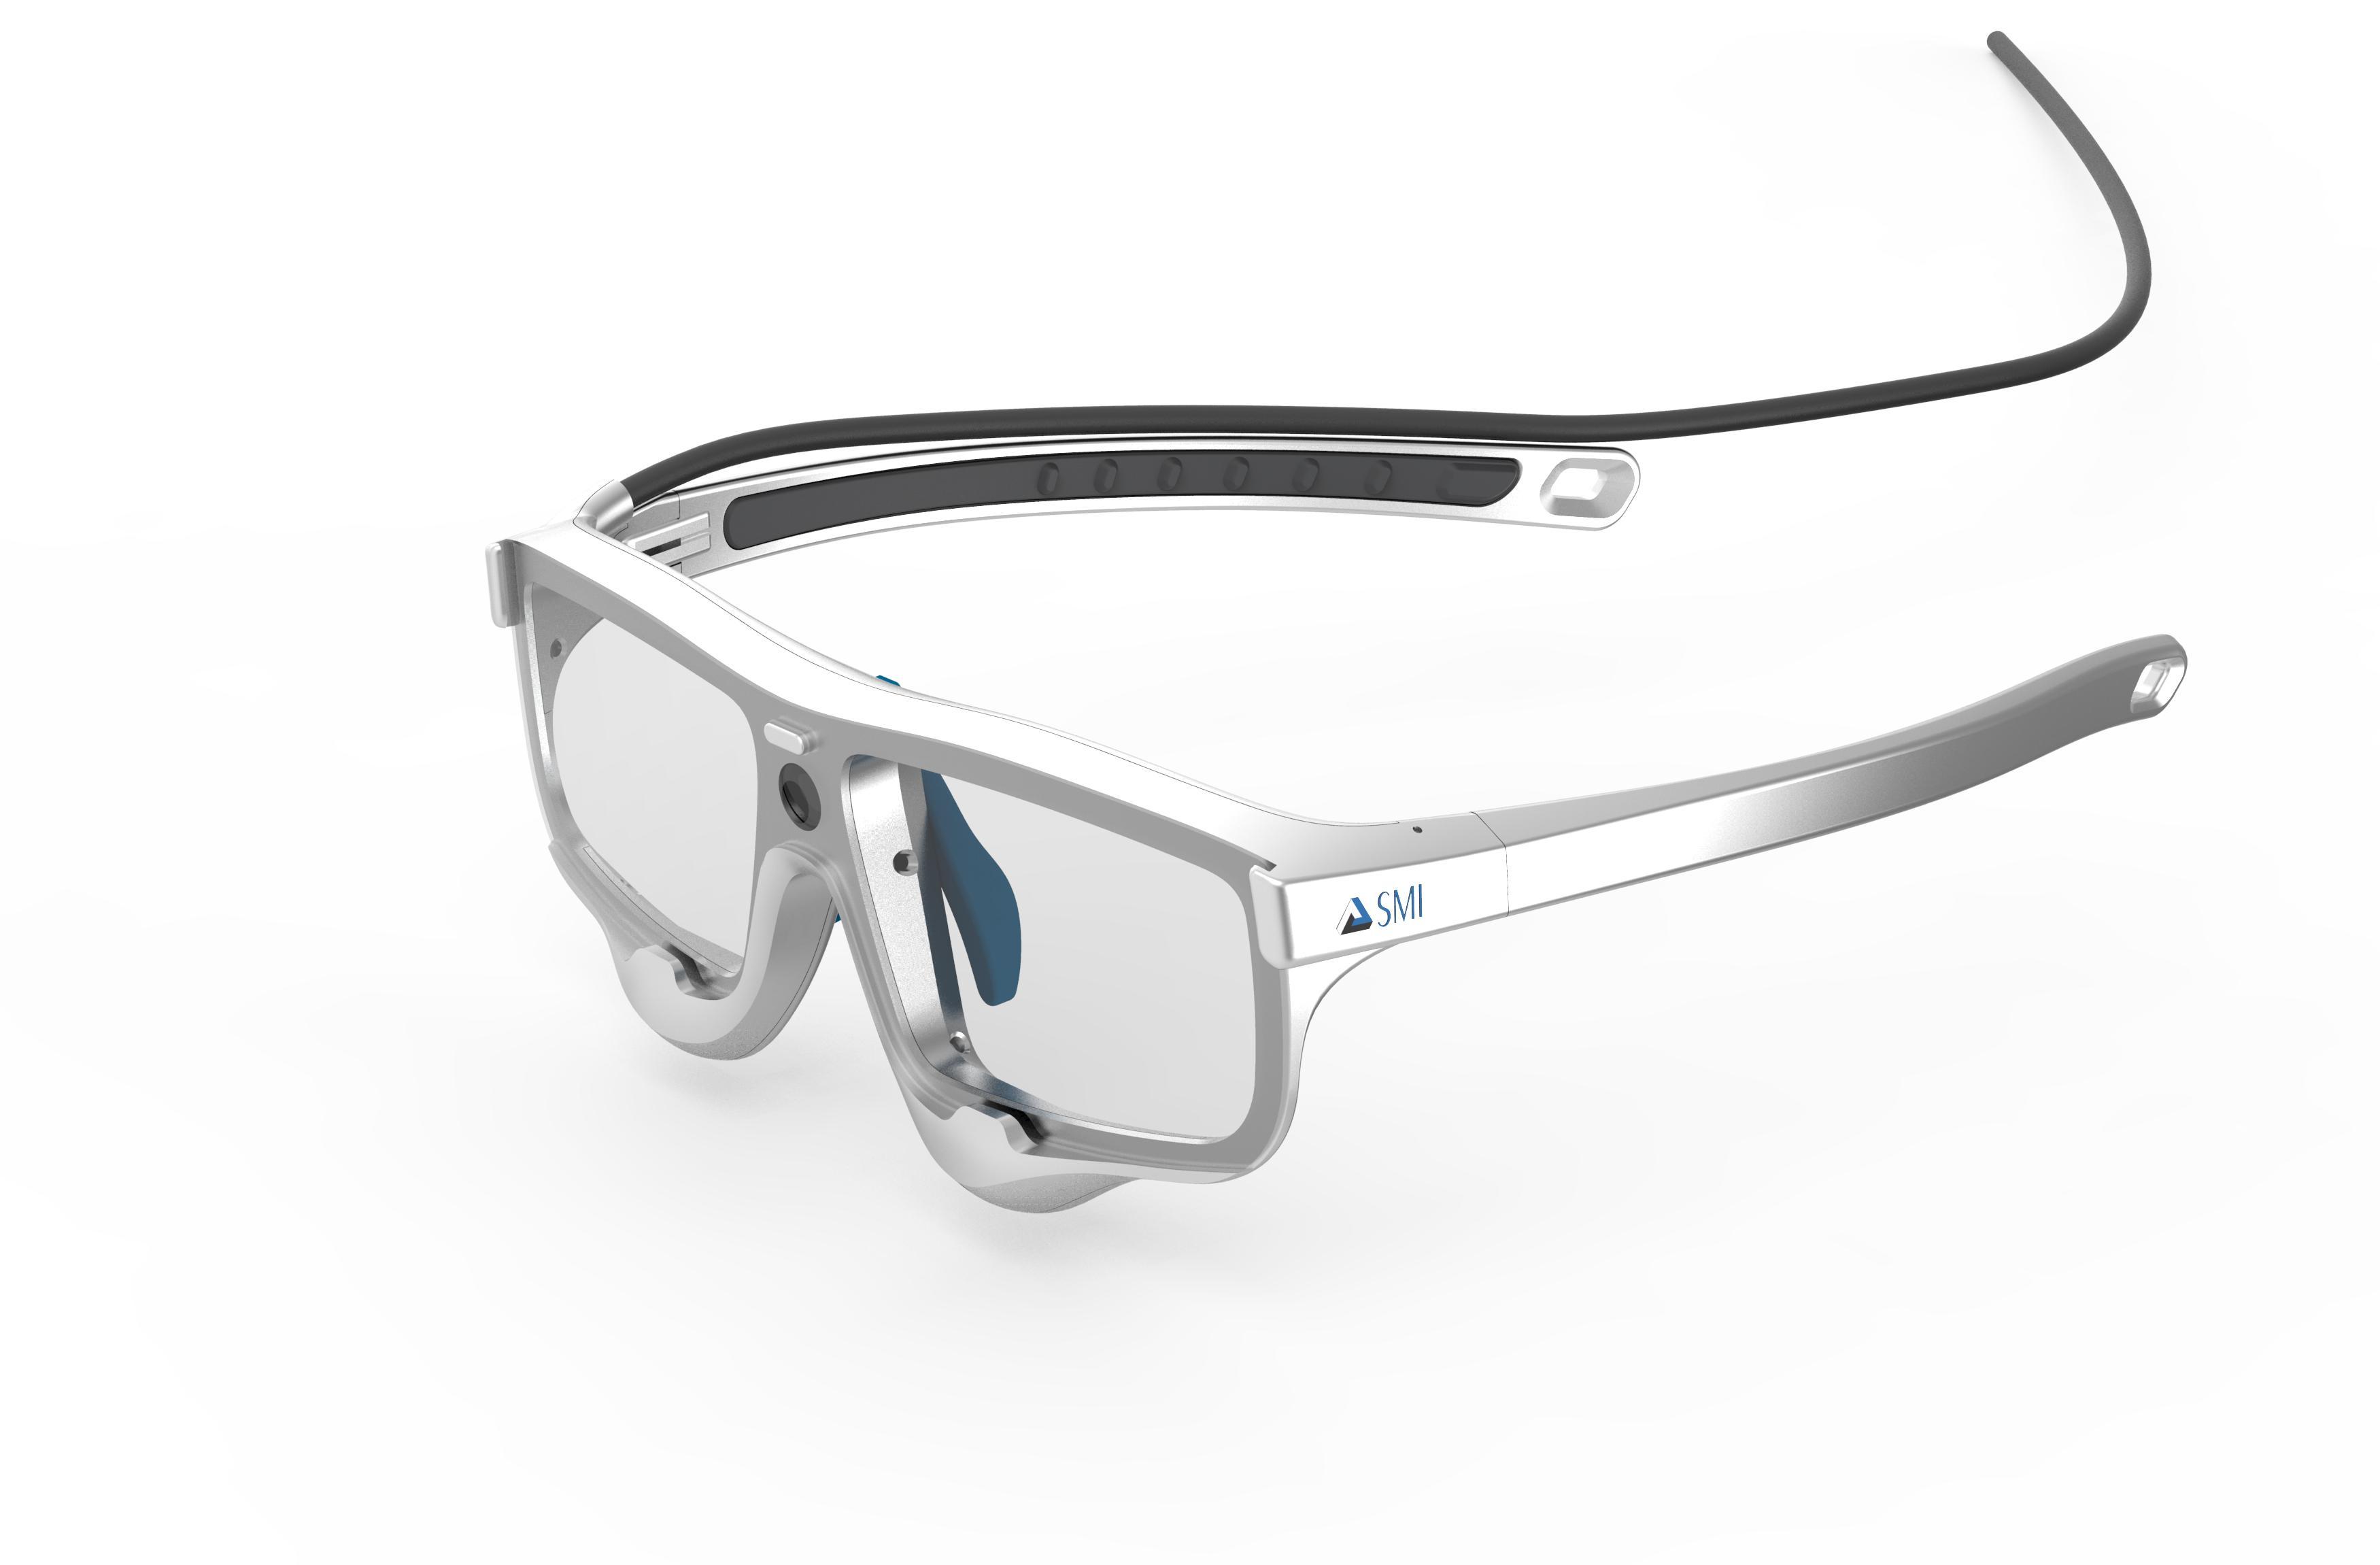 苹果收购眼球追踪技术公司,AR 眼镜「Apple G